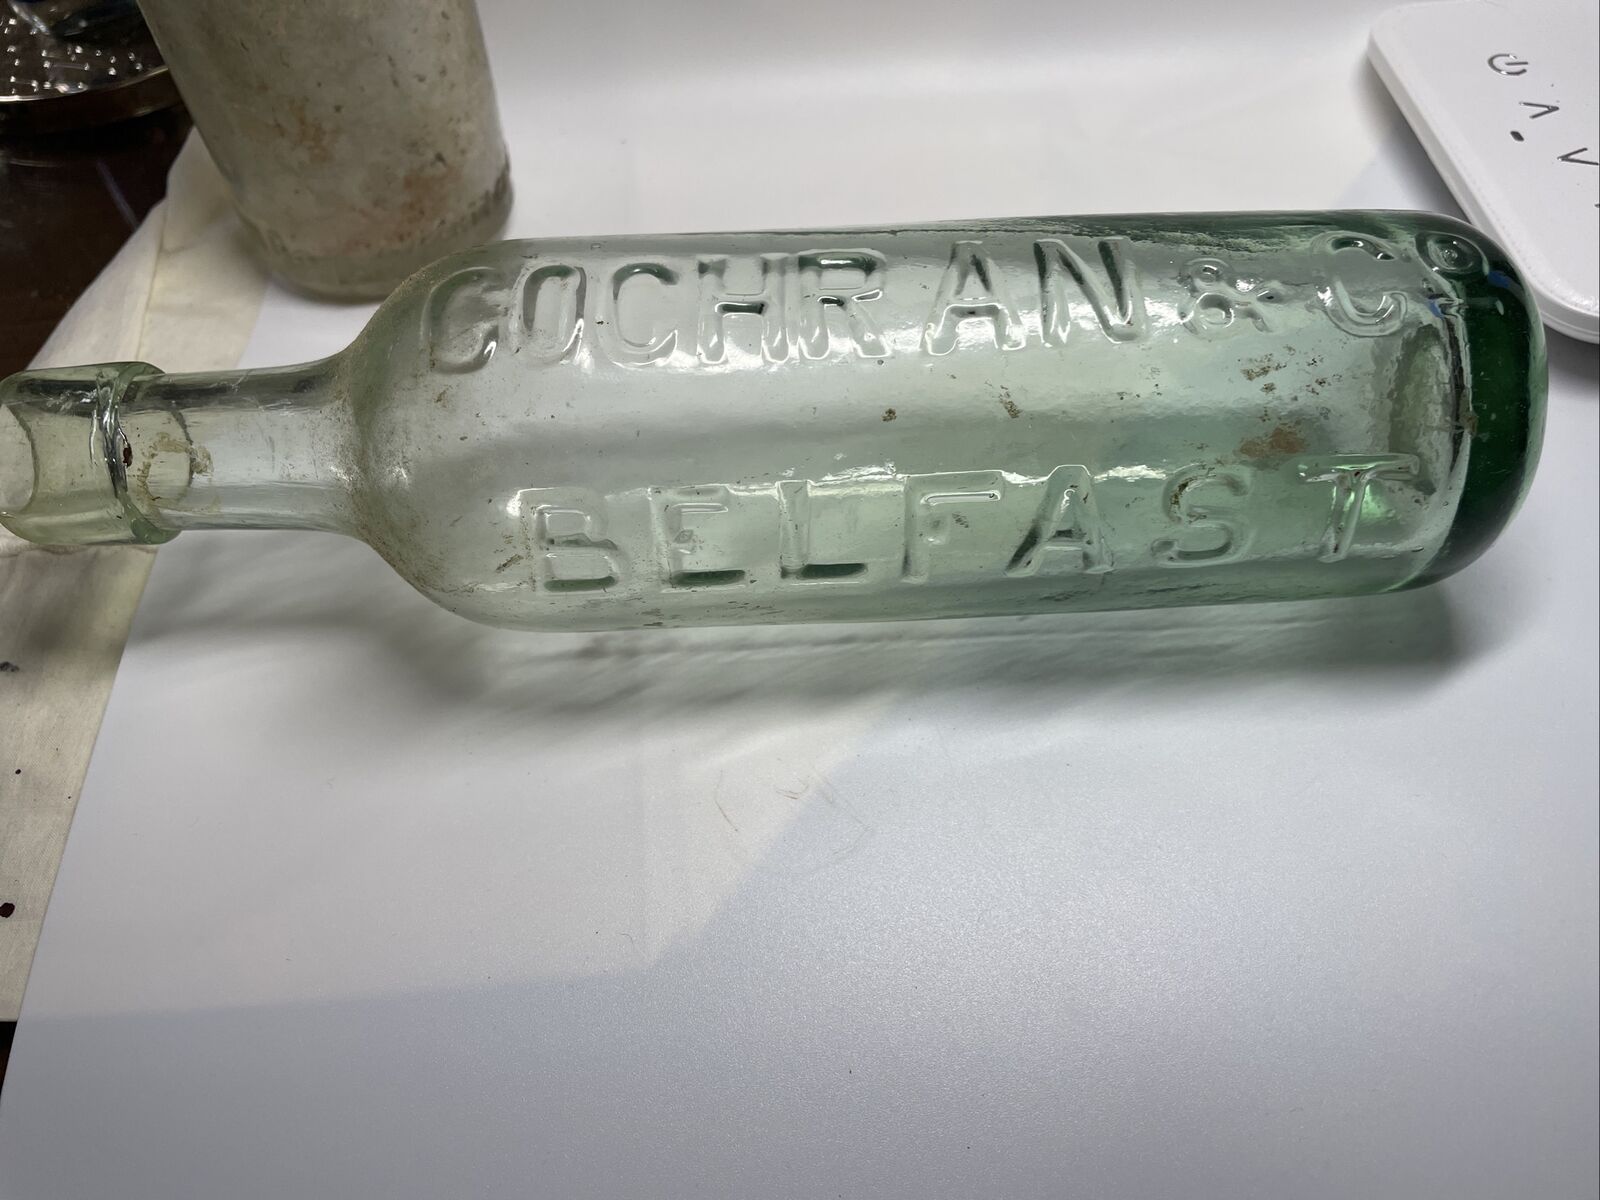 Rare 1900’s Bottle COCHR AN& C0 BELFASTRound Bottom